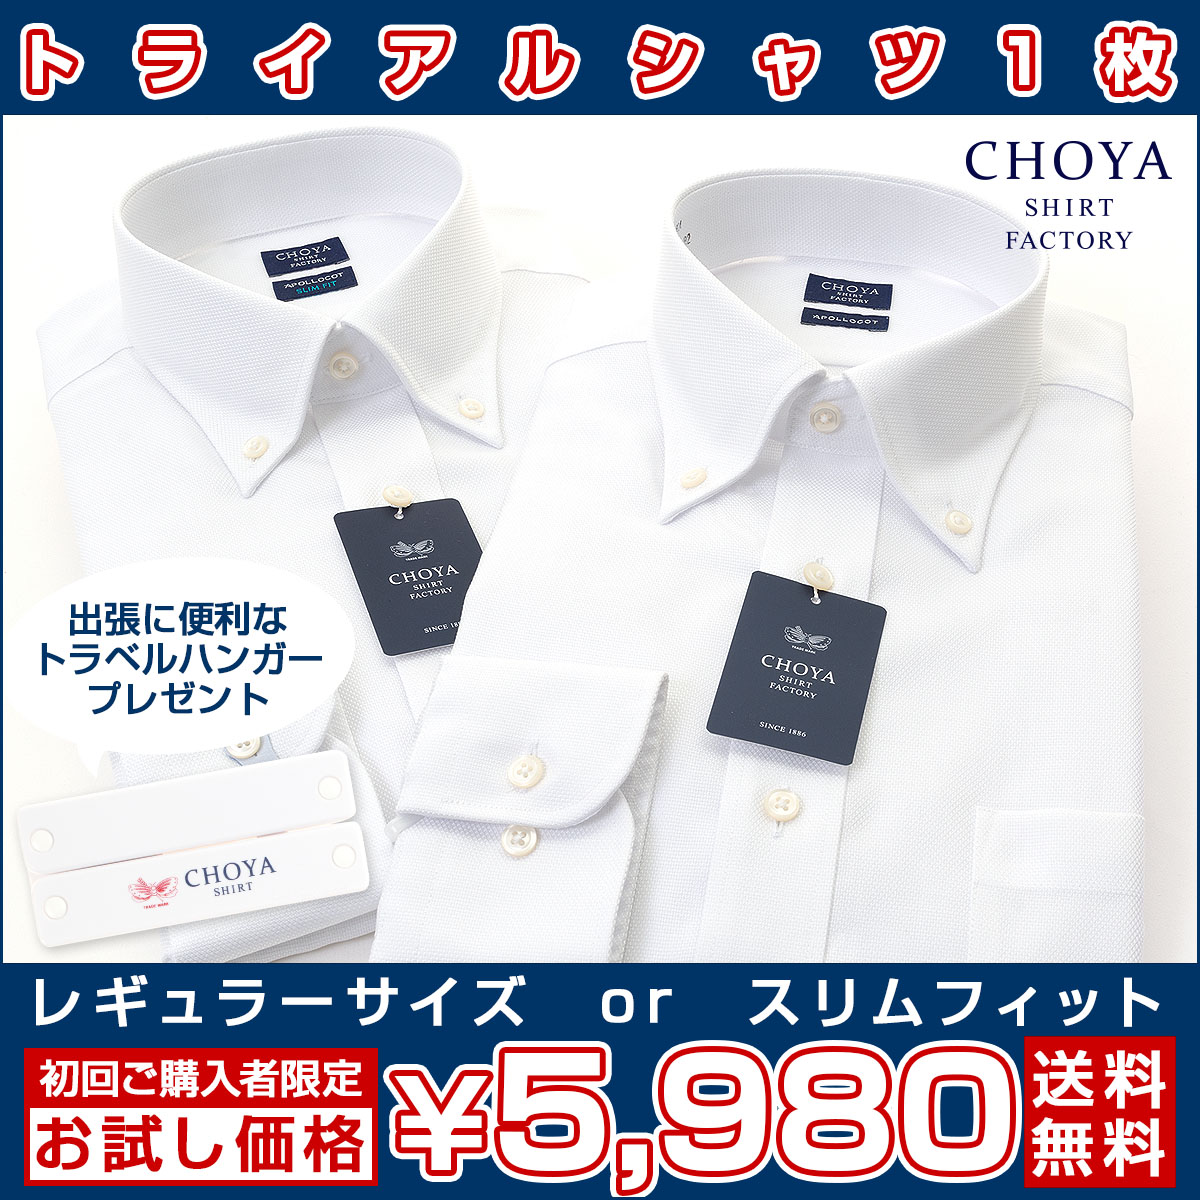 ワイシャツ ドビー CHOYA SHIRT FACTORY CHOYA SHIRT（チョーヤシャツ）  公式YAMAKI オンラインショップ  <<ワイシャツの山喜>>